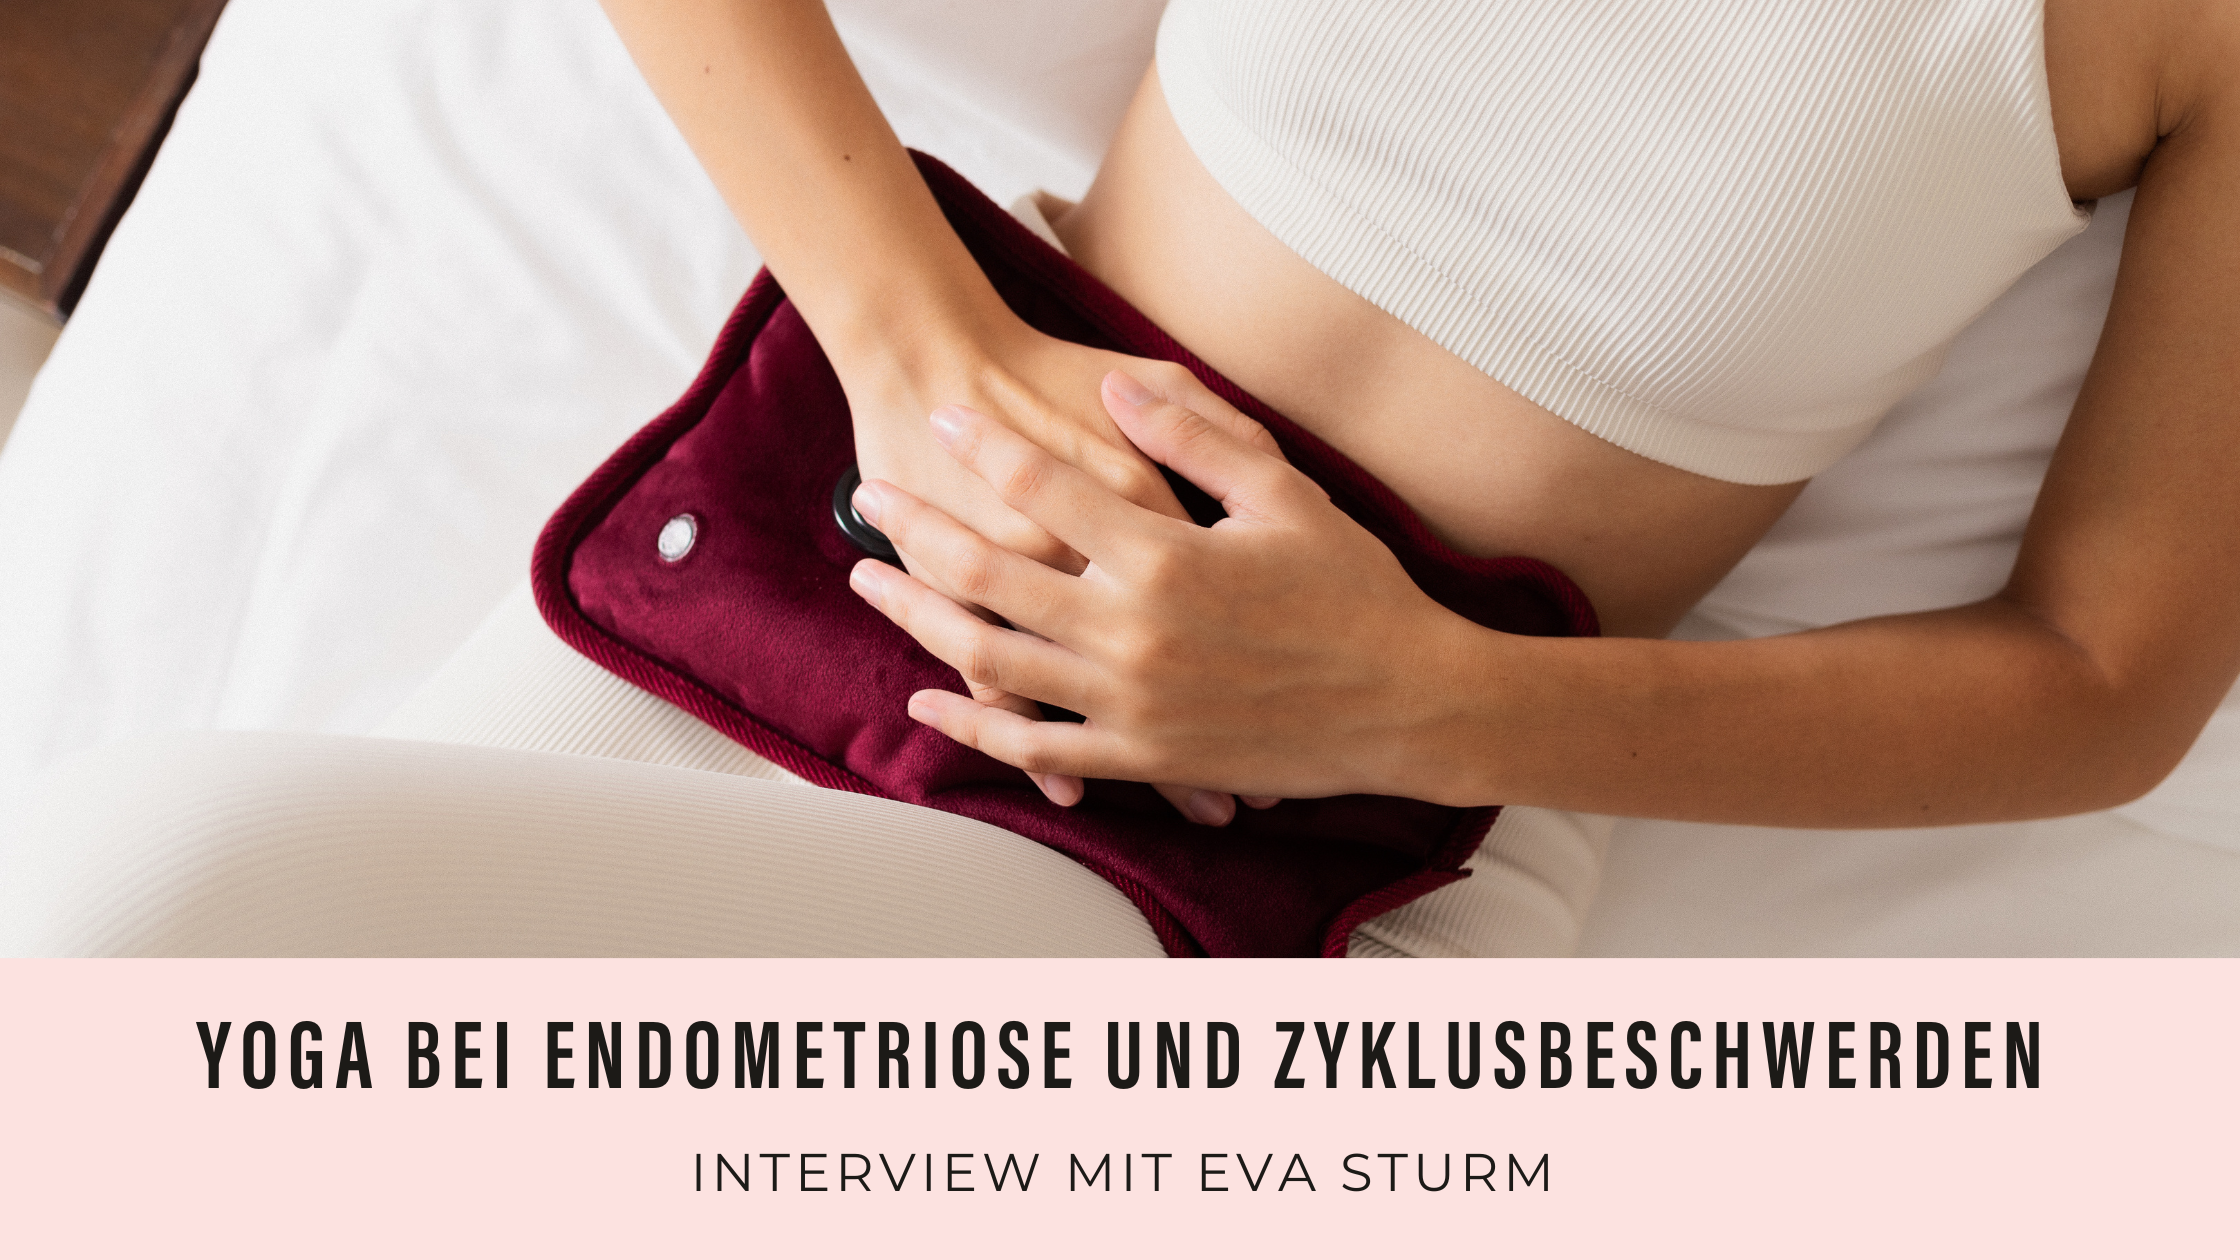 Yoga und Endometriose